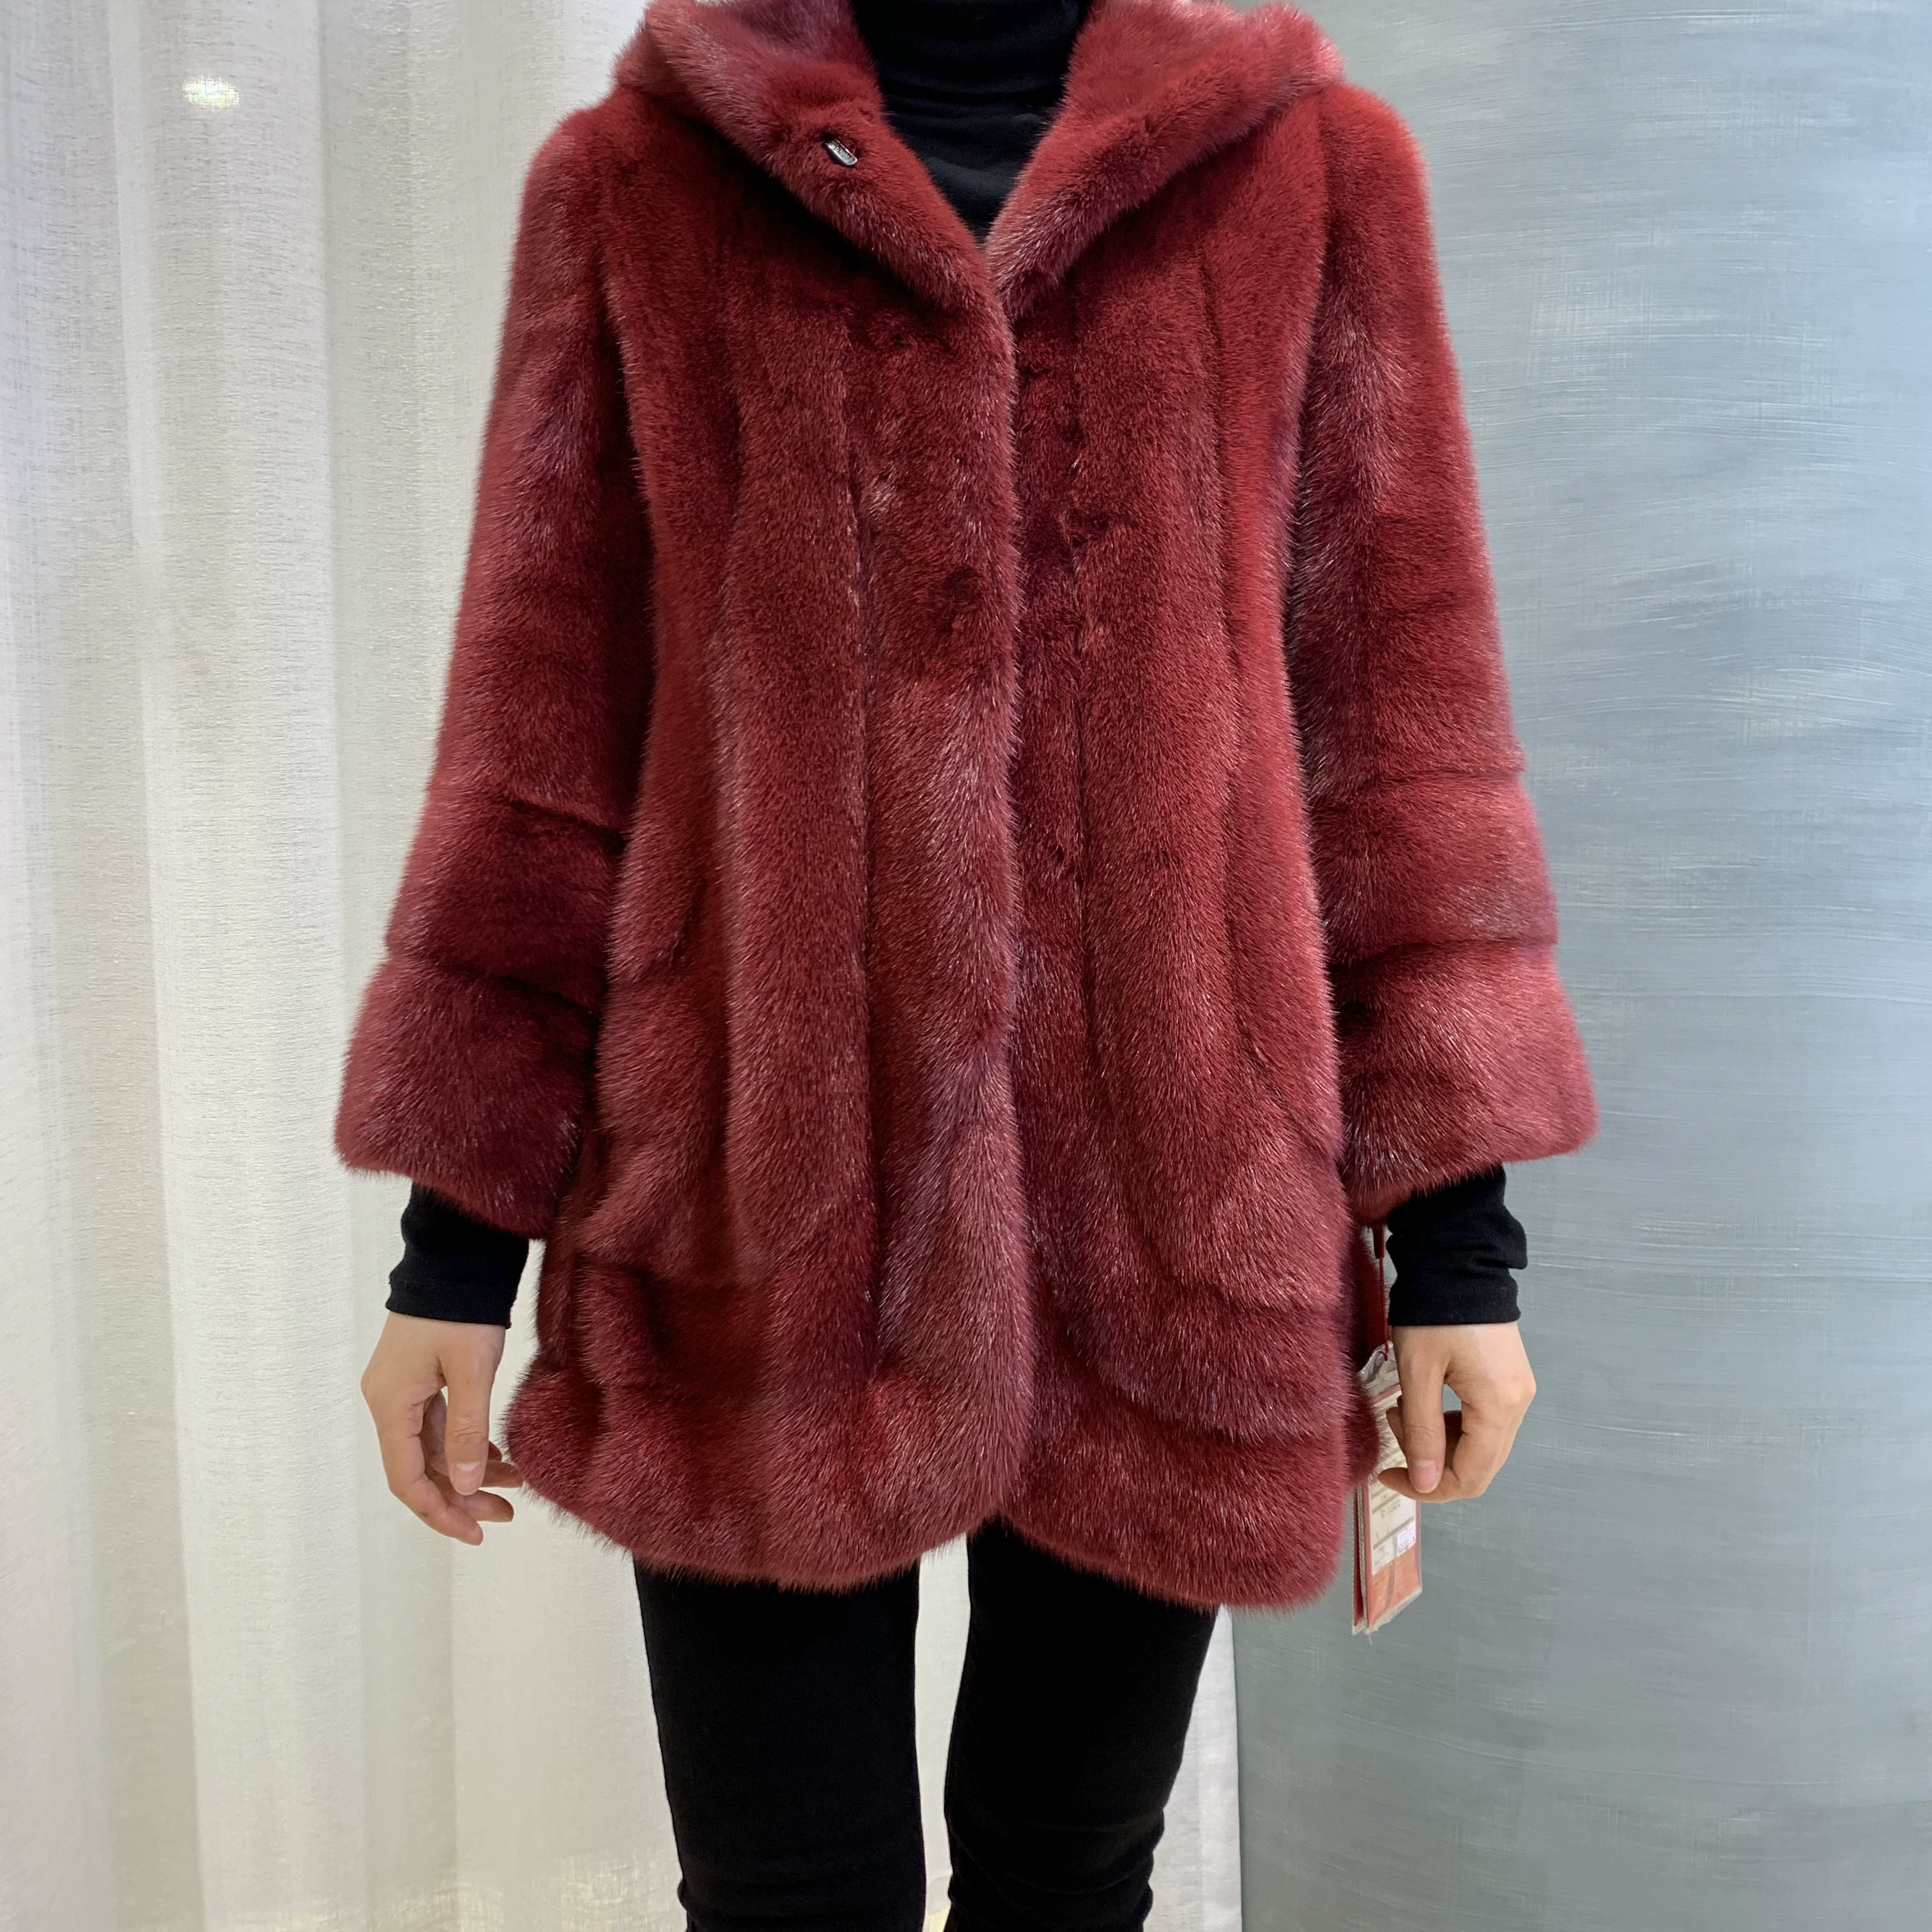 100% chồn nhập khẩu Đan Mạch, đỏ lựu, cao cấp sang trọng, thanh hạng nhất màu trắng, áo khoác lông - Faux Fur